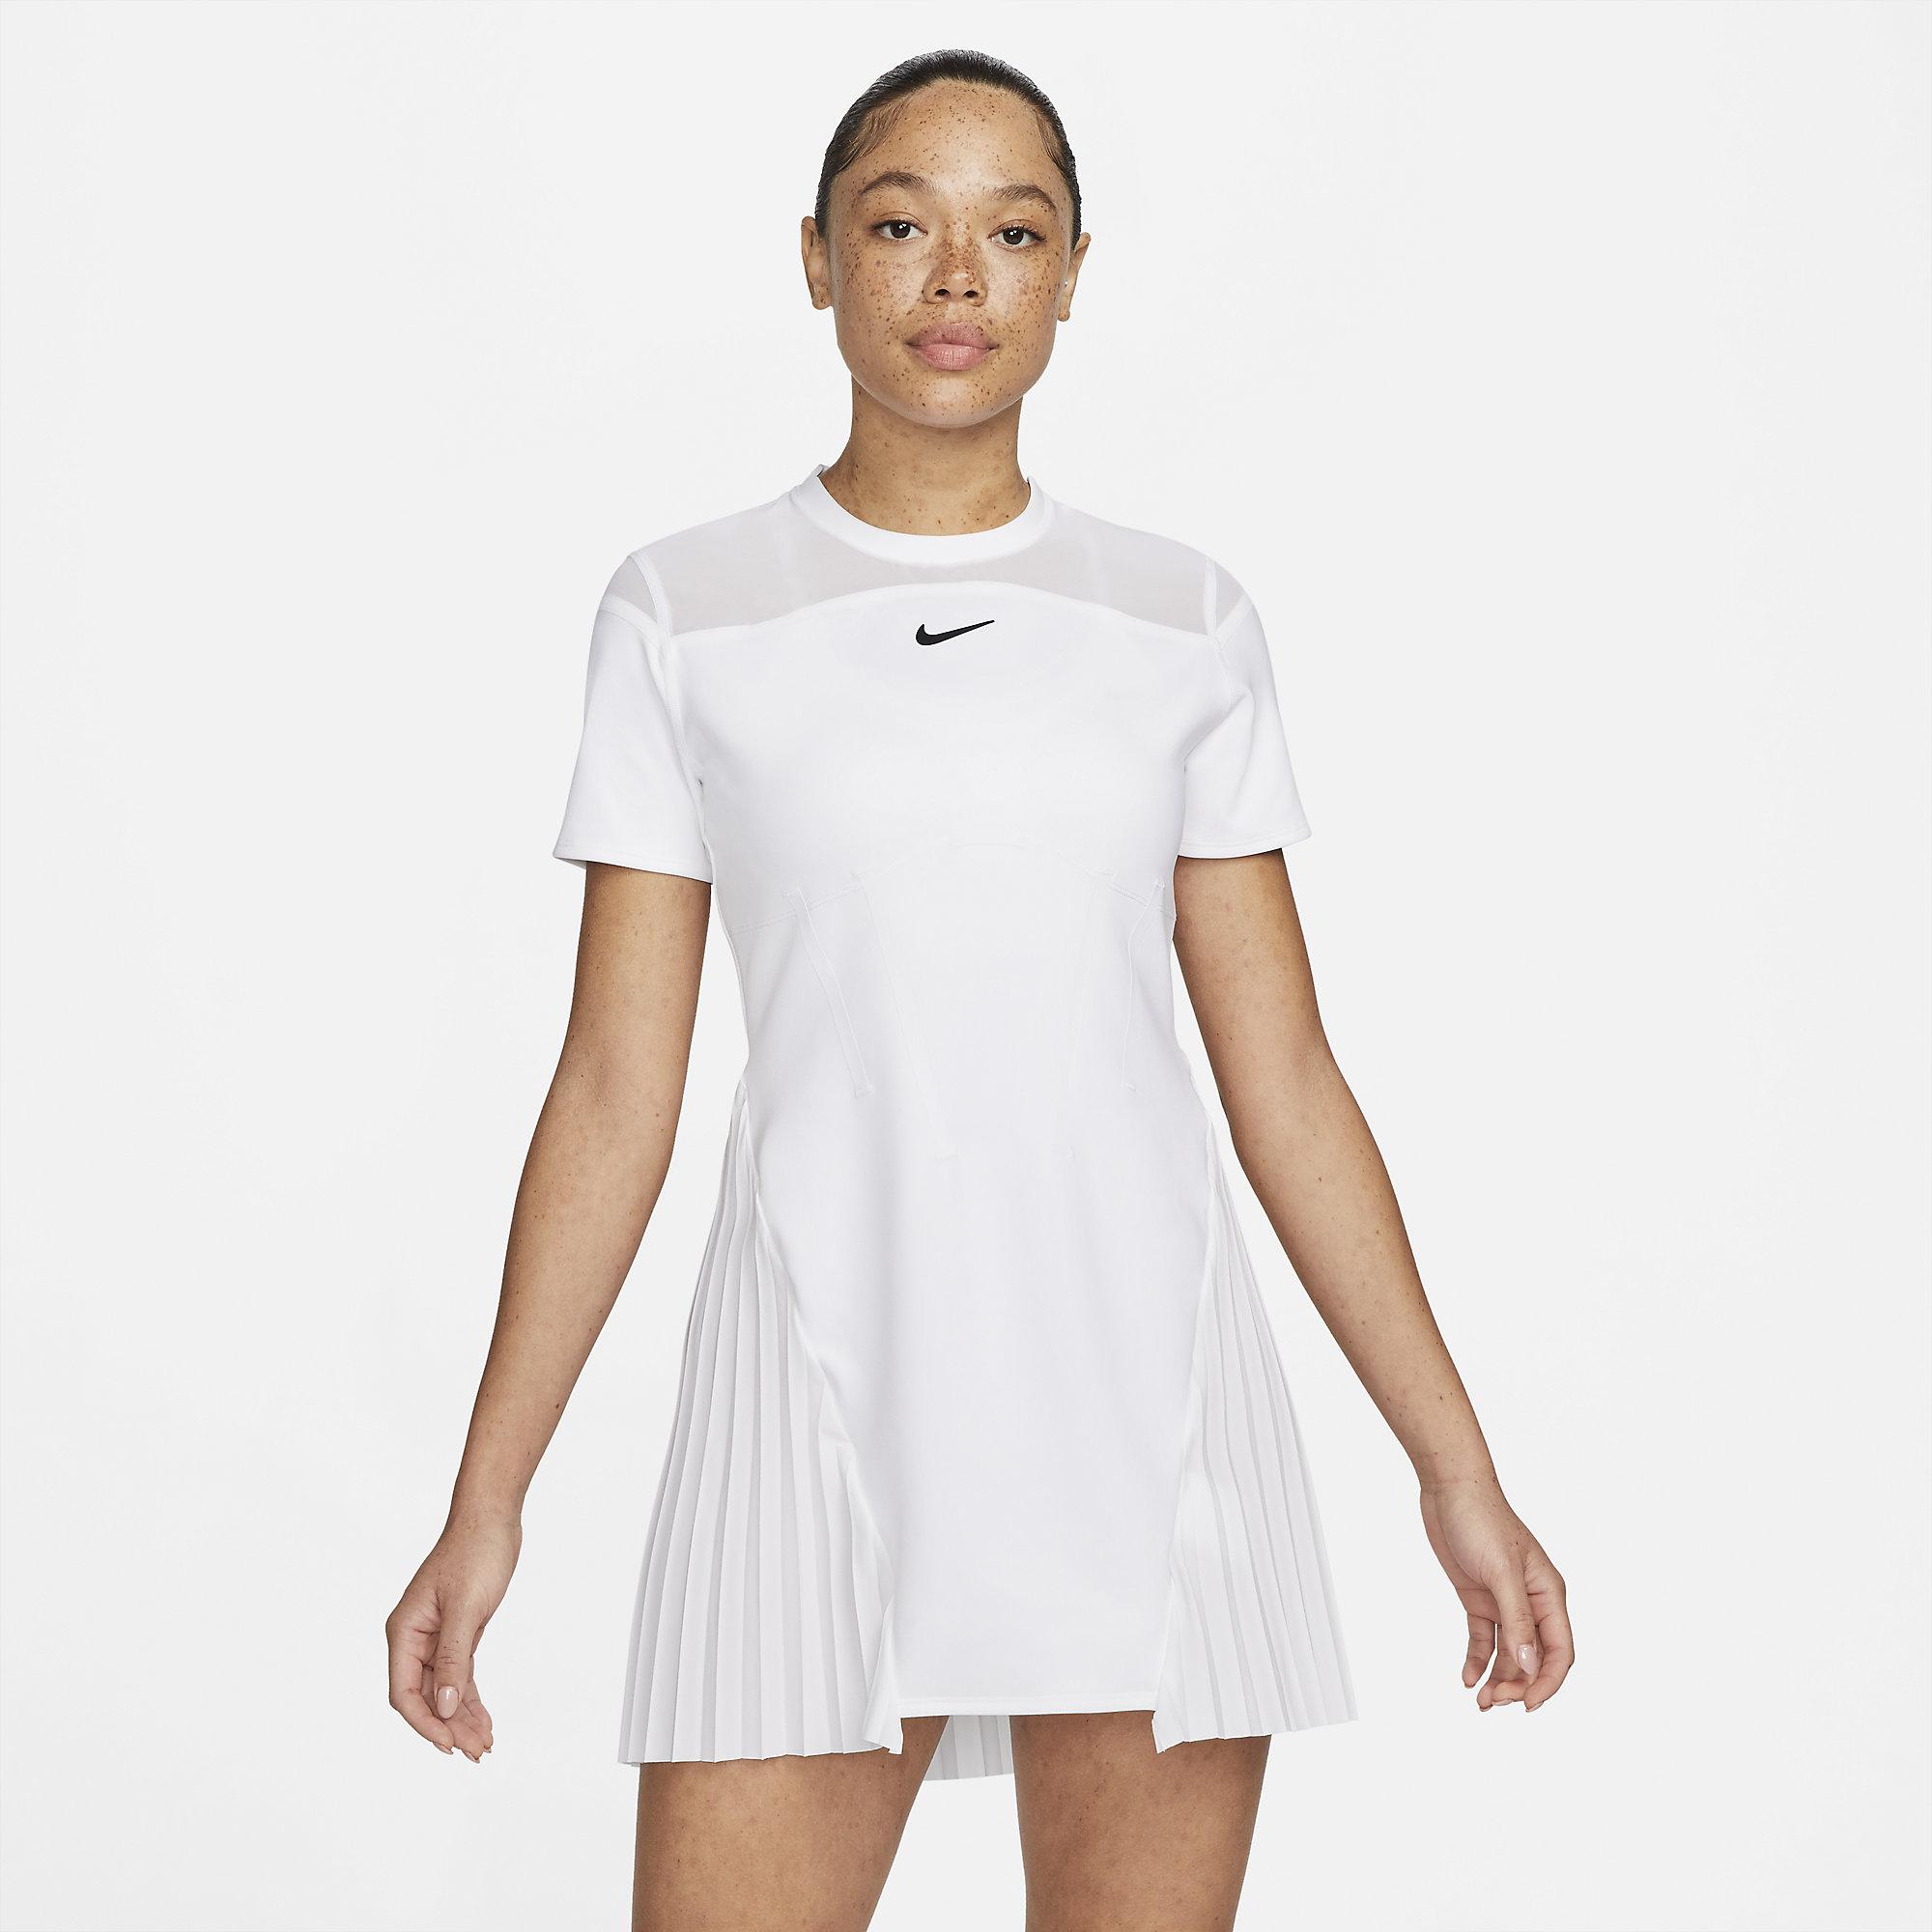 Nike Womens Slam Tennis Dress - White - Tennisnuts.com